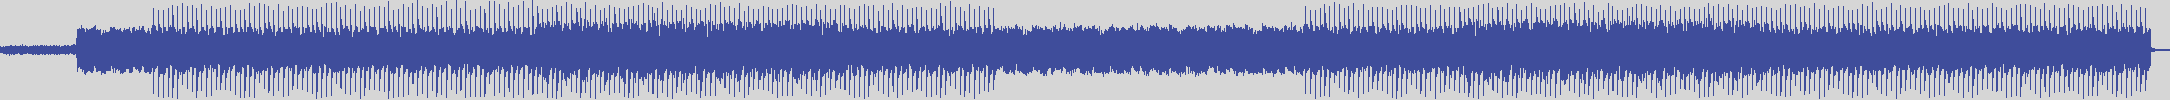 atomic_recordings [AR009] Max Dibart - Long Time [Original Mix] audio wave form